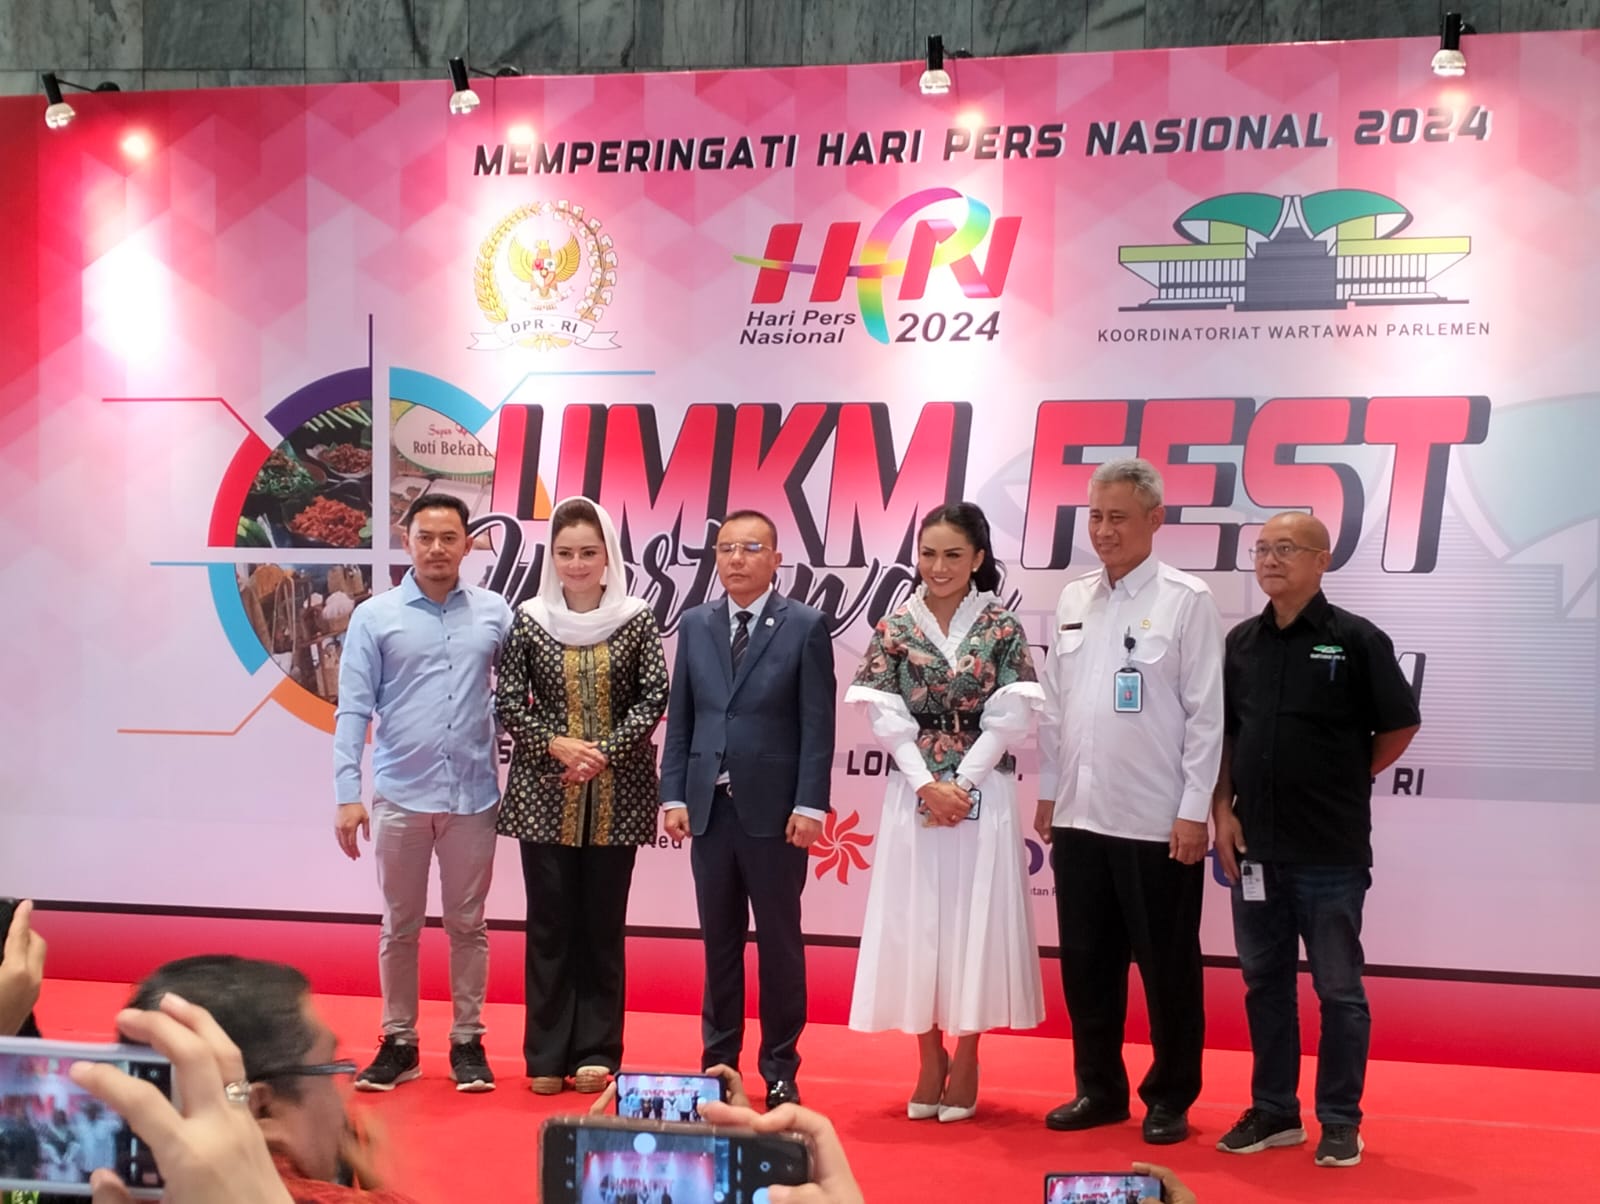 Pimpinan DPR Apresiasi KWP yang Gelar UMKM Fest